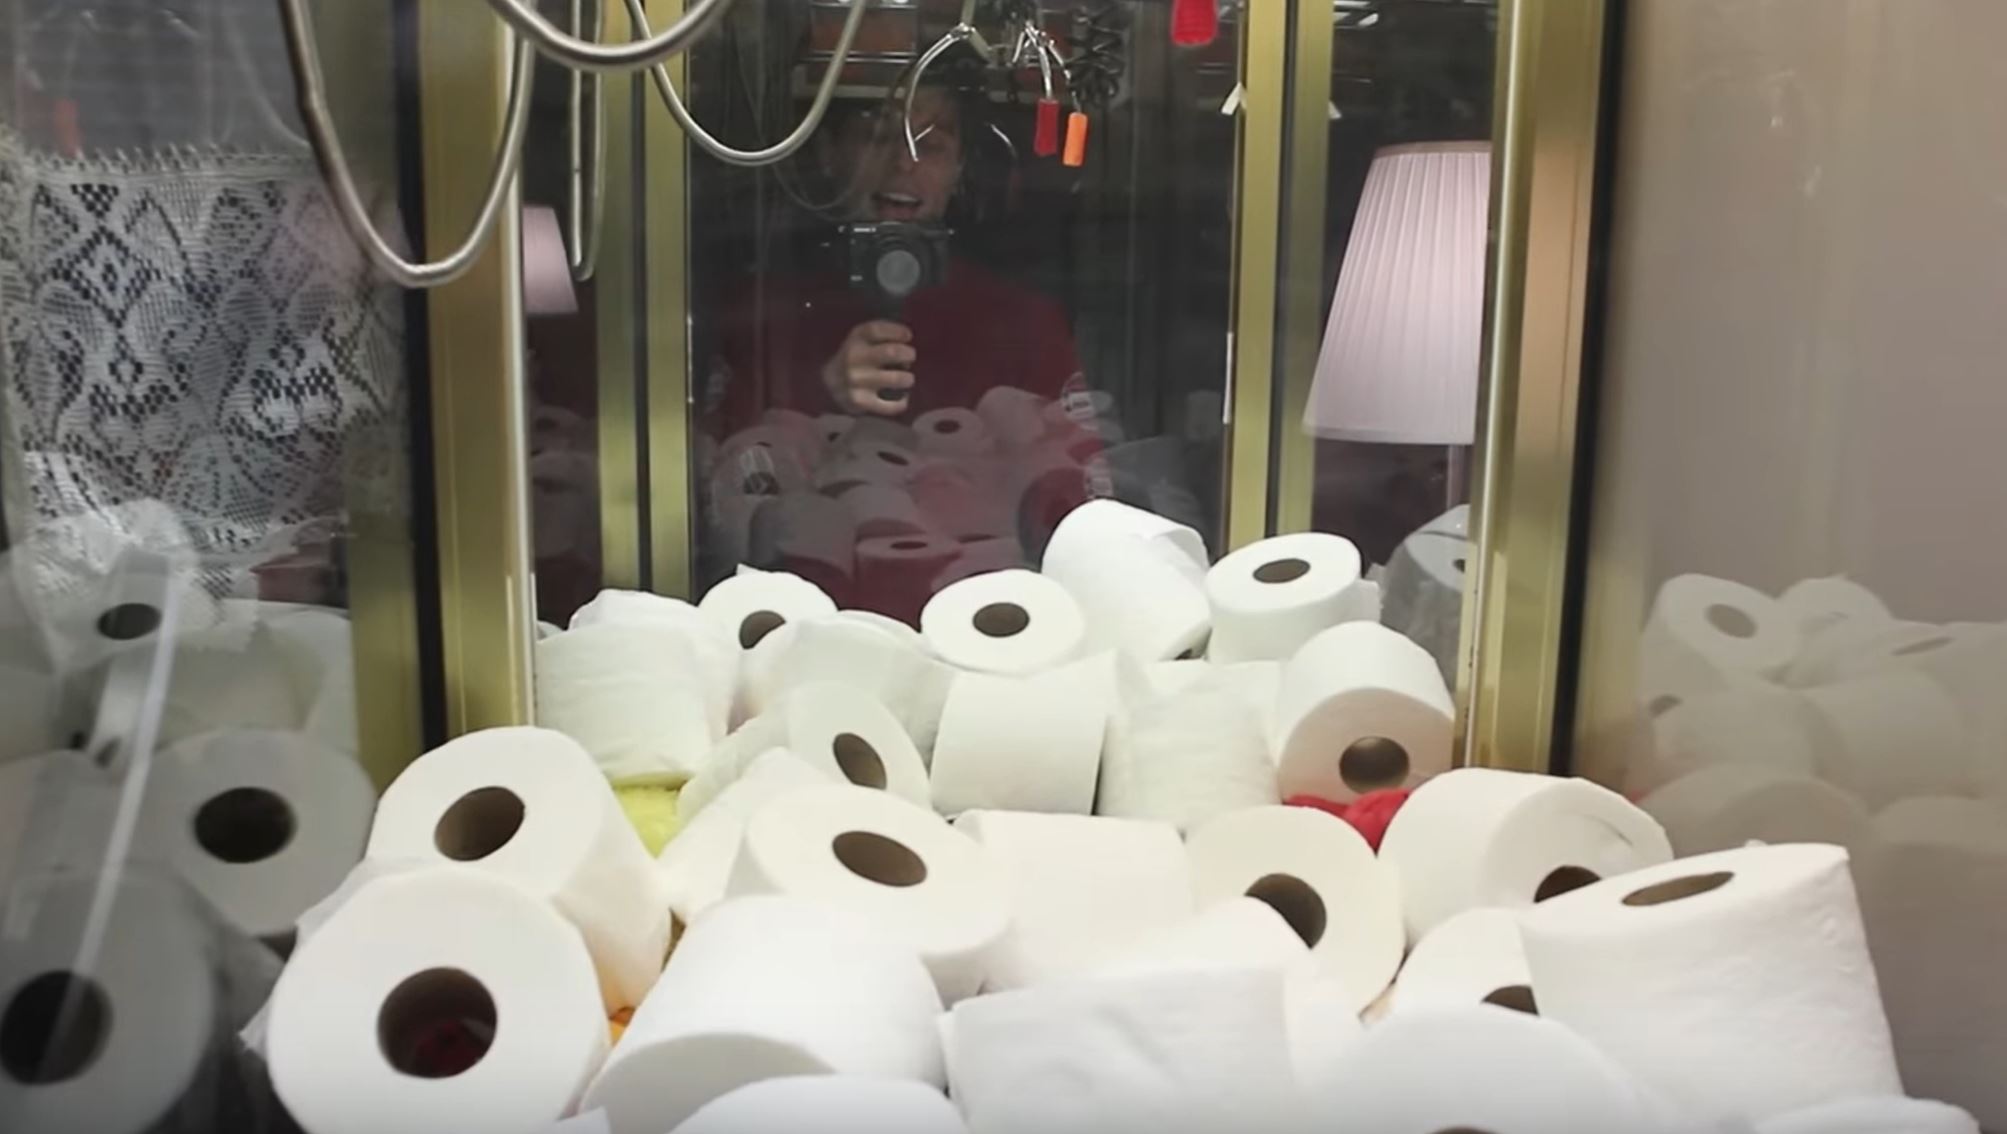 Arcade Matt Toilet Paper Claw Machine Charity Challenge!